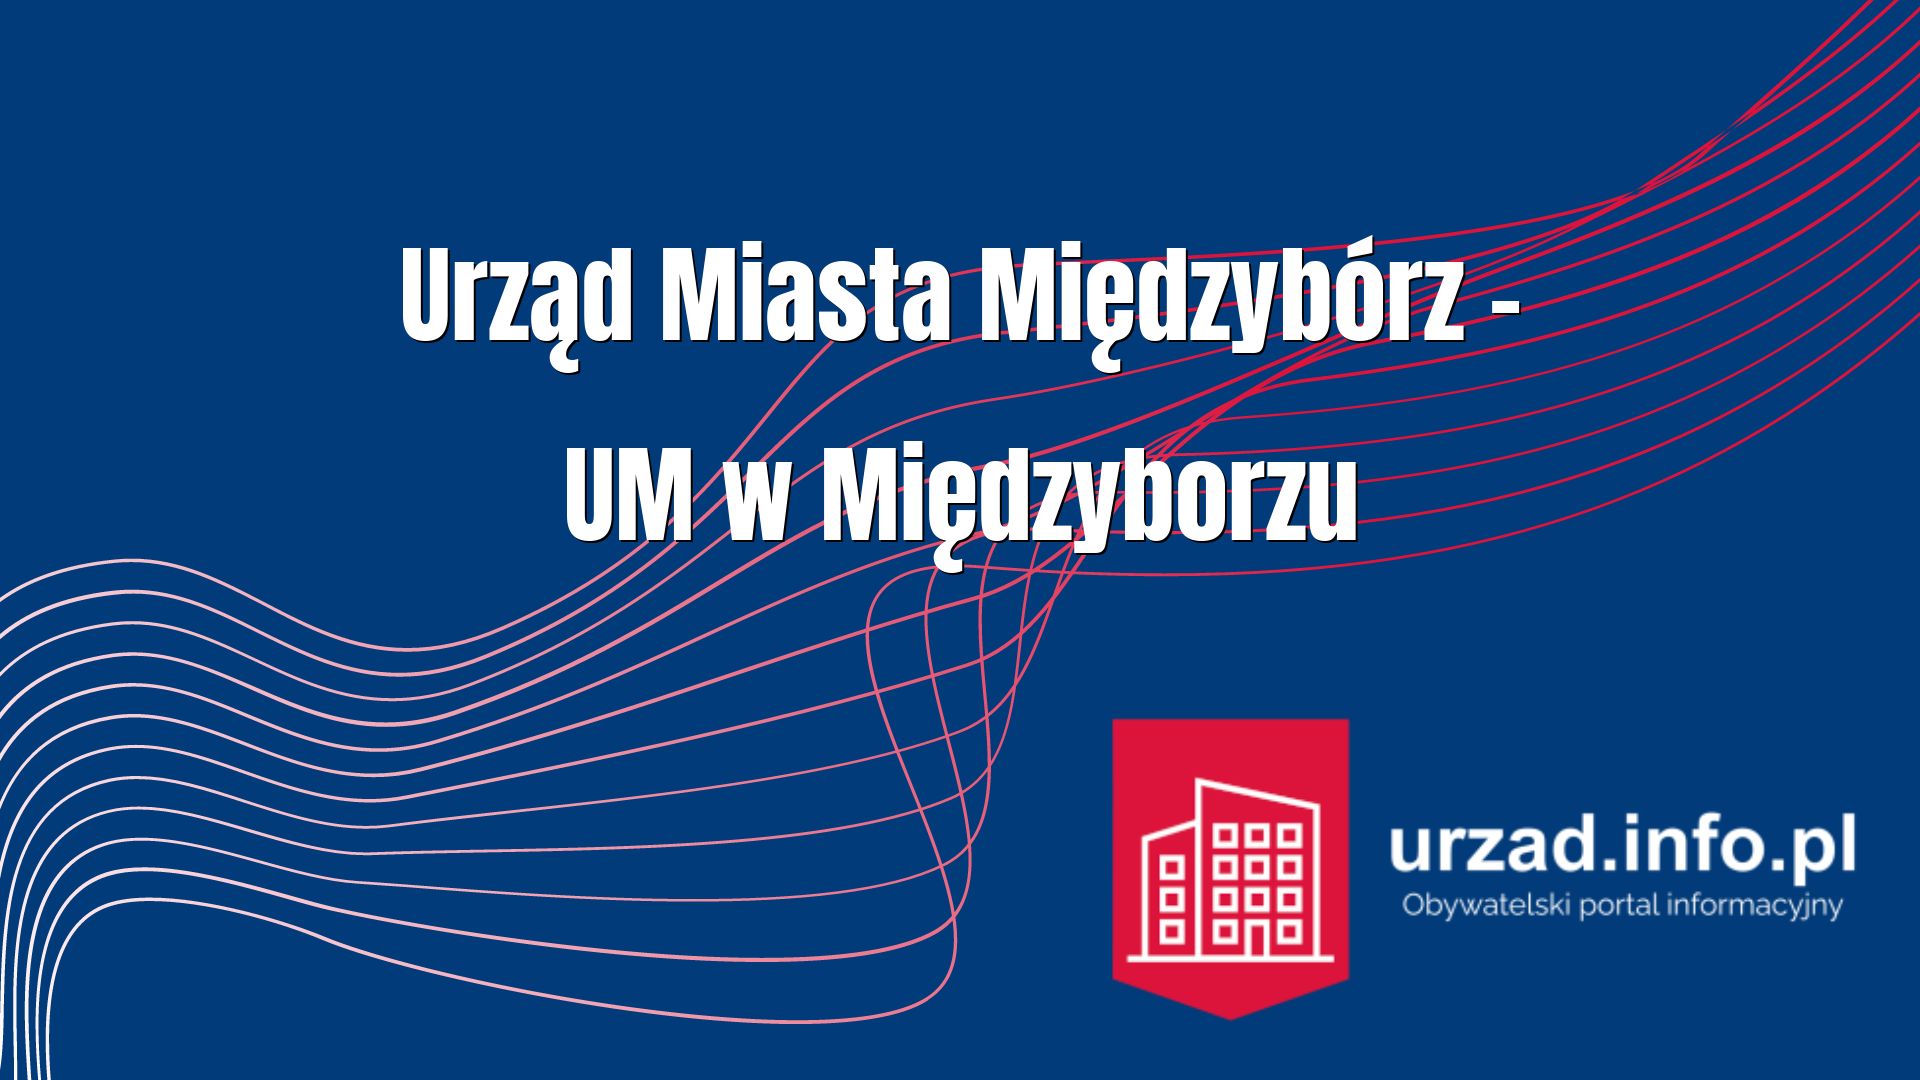 Urząd Miasta Międzybórz – UM w Międzyborzu